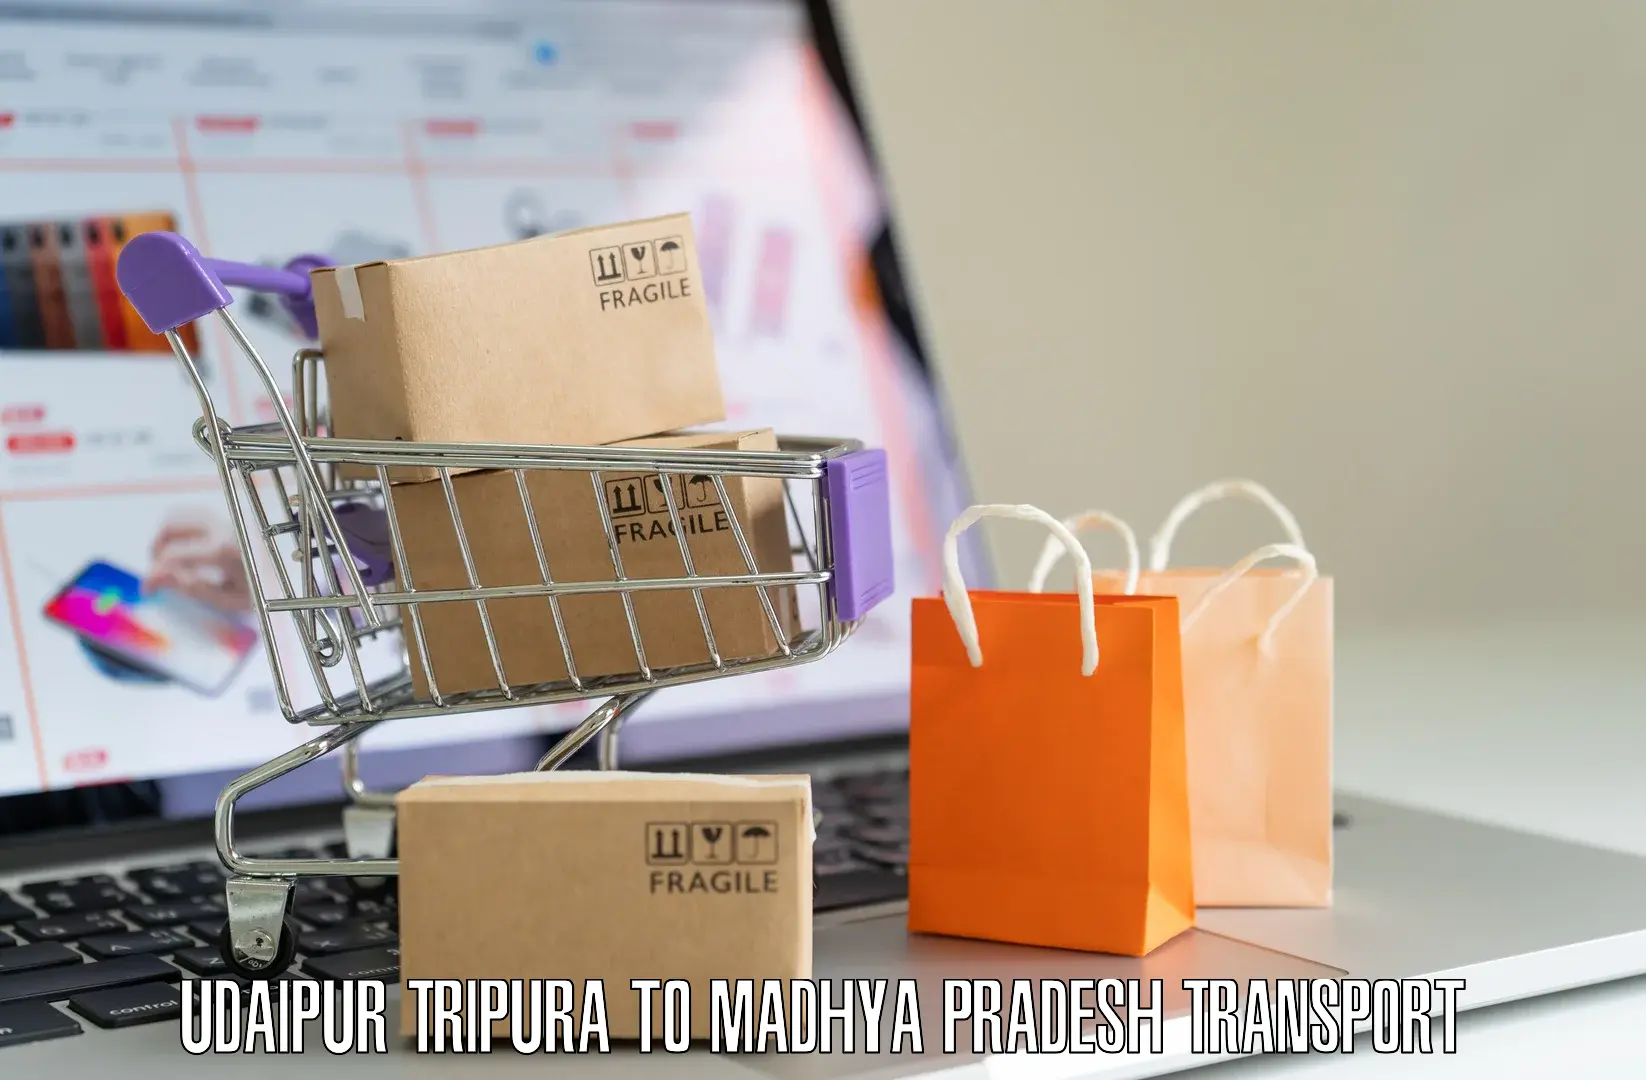 Furniture transport service Udaipur Tripura to Karera